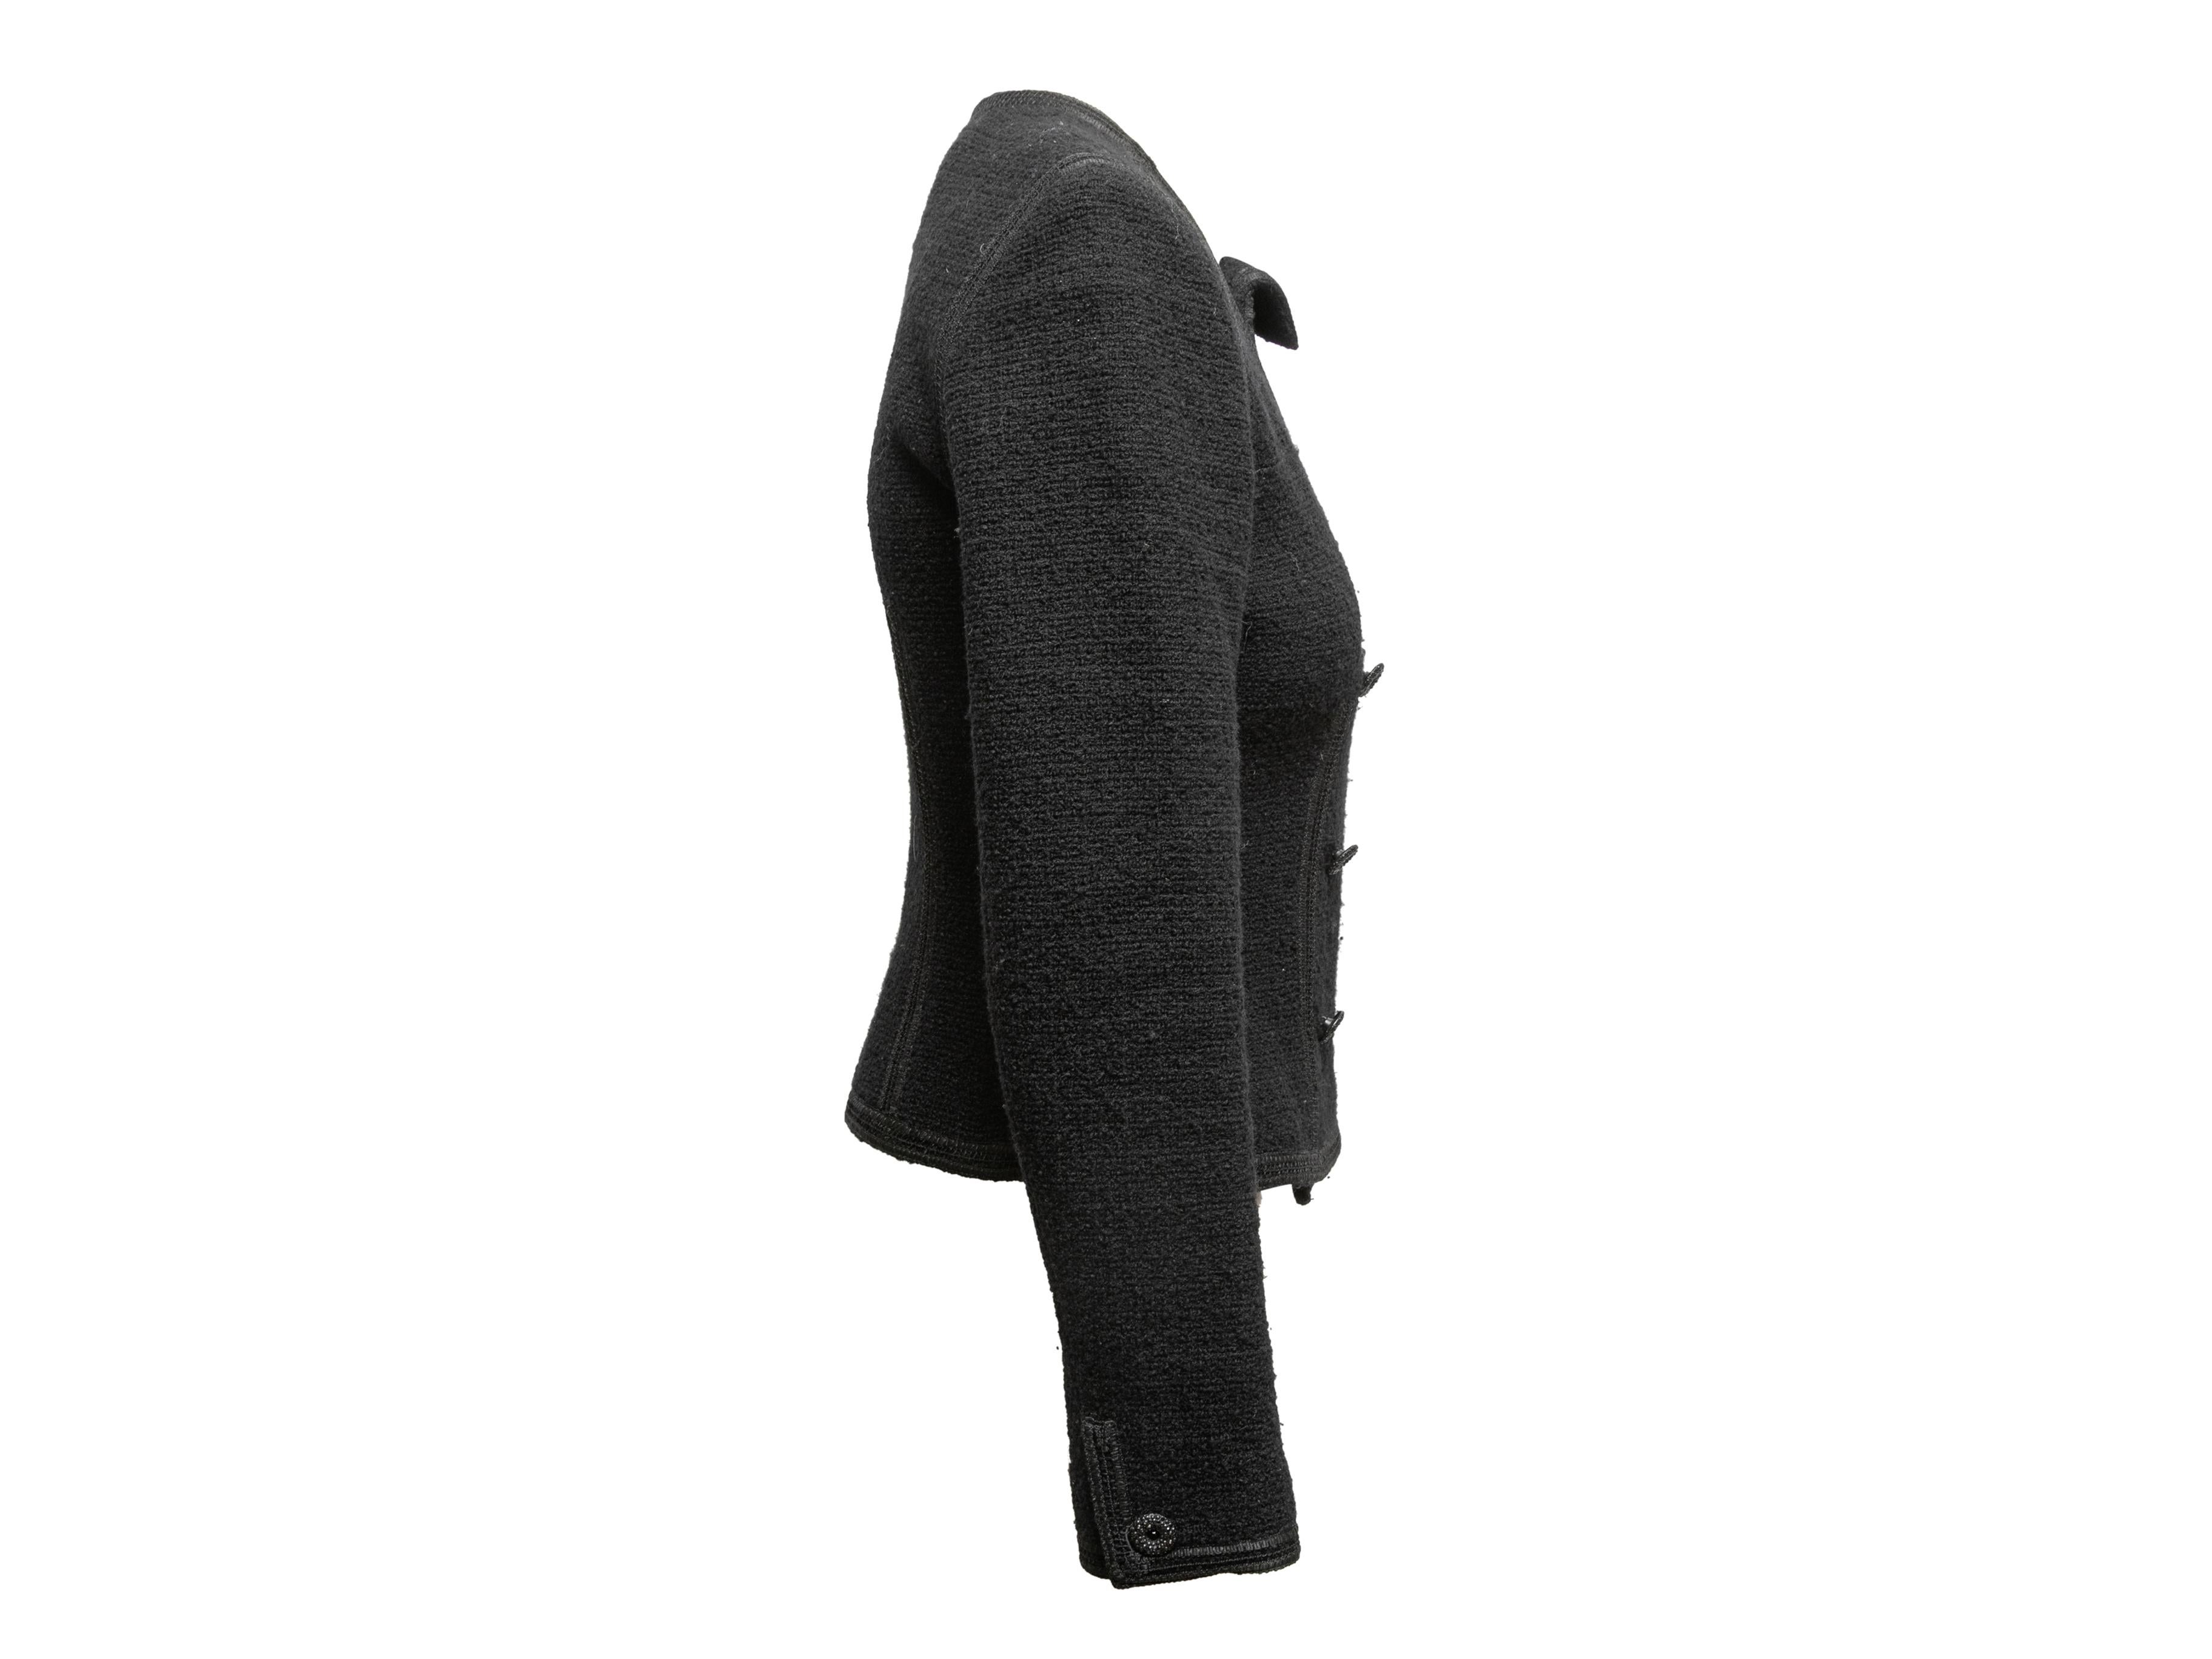  Veste asymétrique Chanel noire bouclée taille US S Pour femmes 